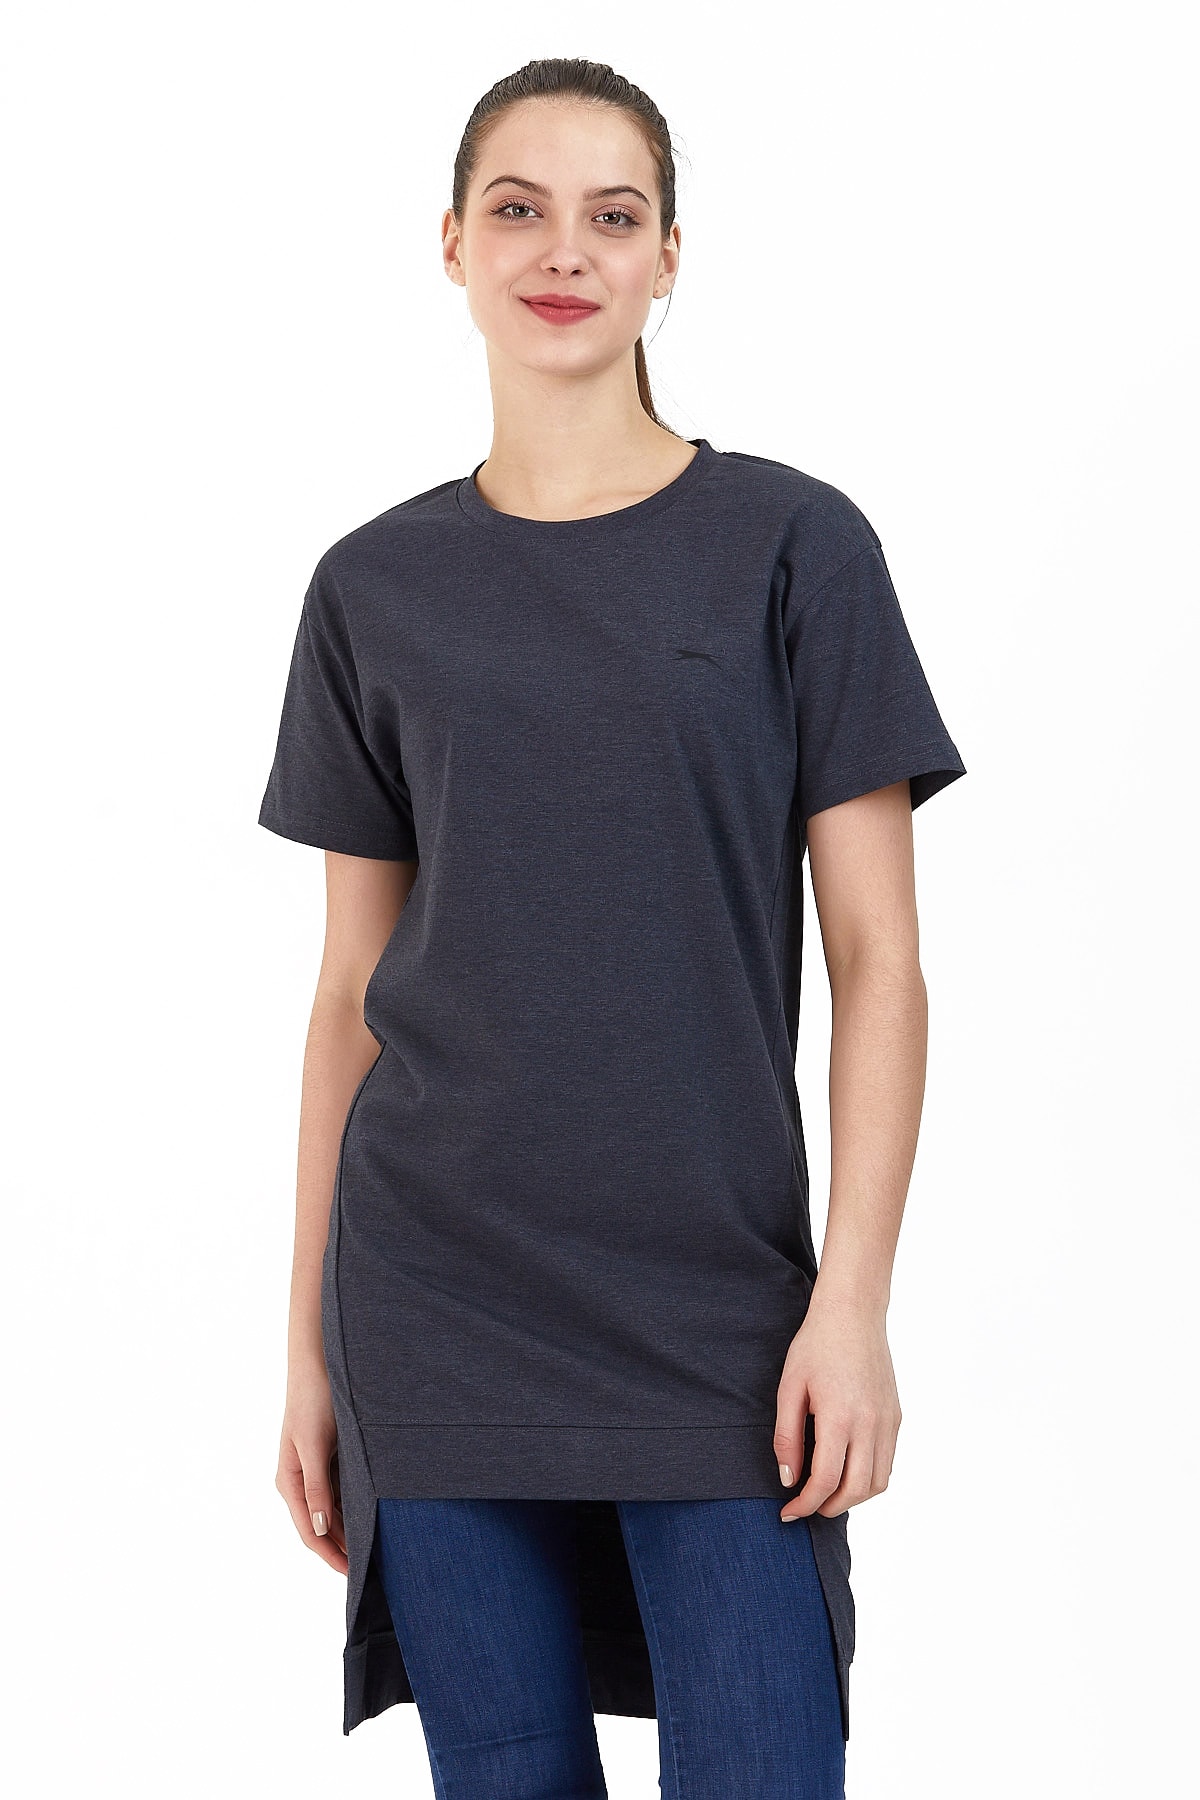 Levně Slazenger Minato Women's T-shirt K.gray